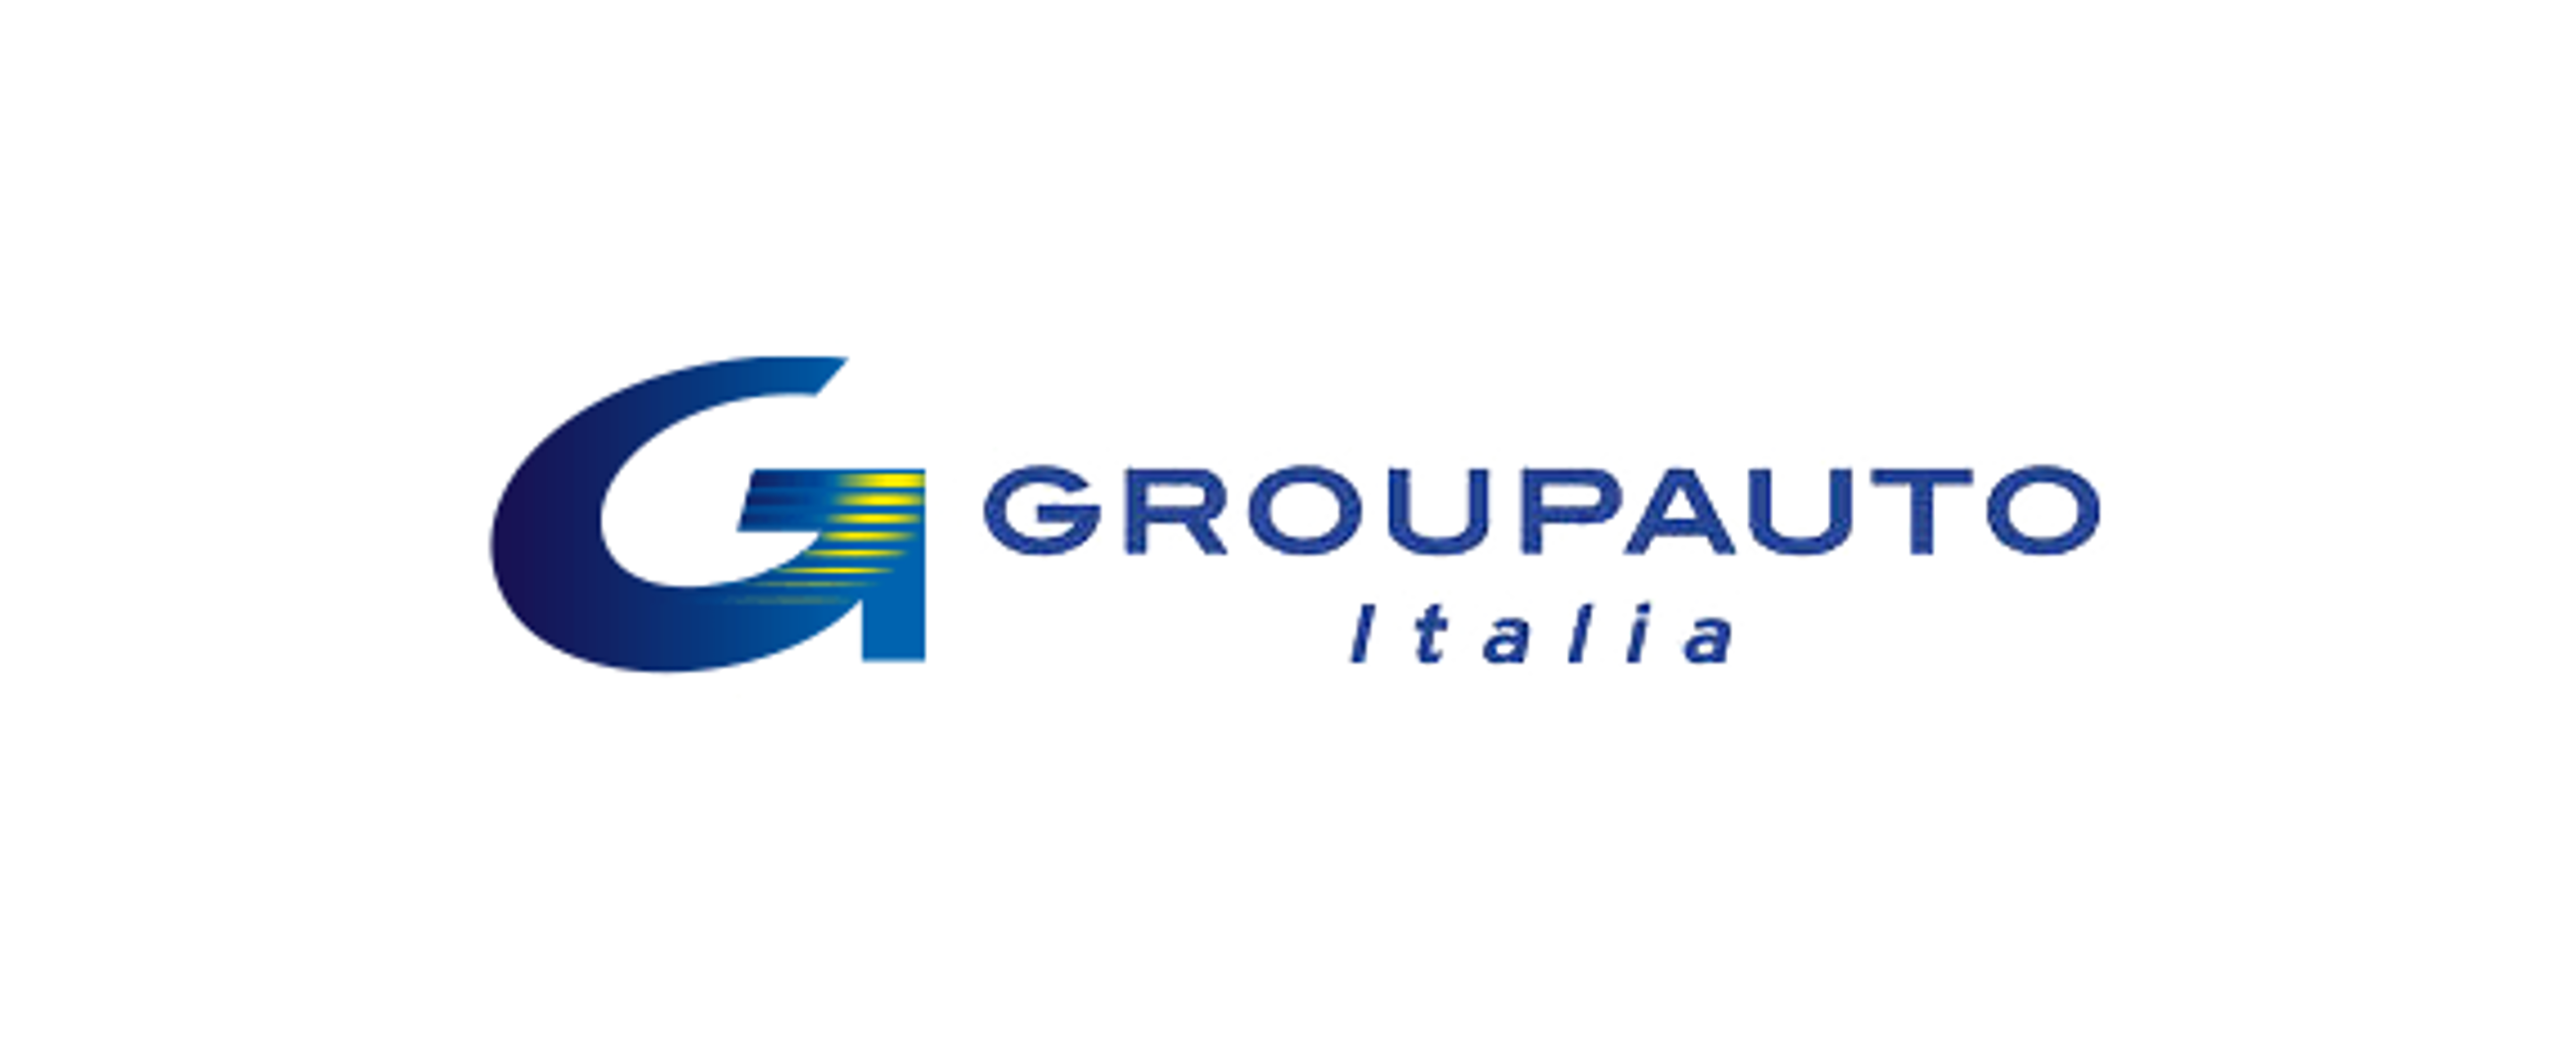 Groupauto Italia